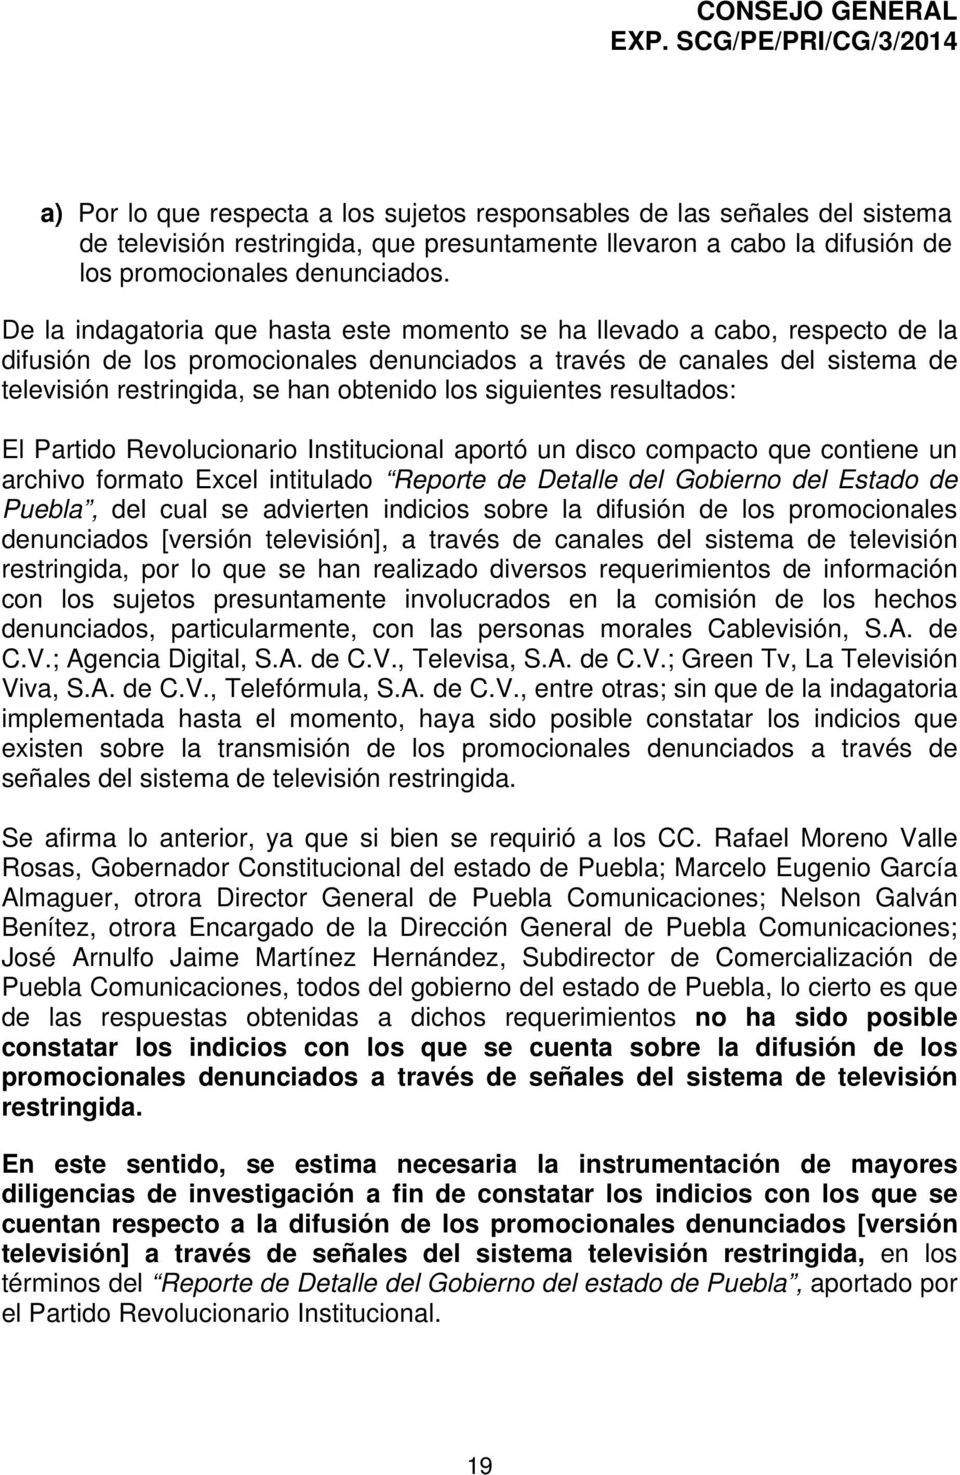 siguientes resultados: El Partido Revolucionario Institucional aportó un disco compacto que contiene un archivo formato Excel intitulado Reporte de Detalle del Gobierno del Estado de Puebla, del cual